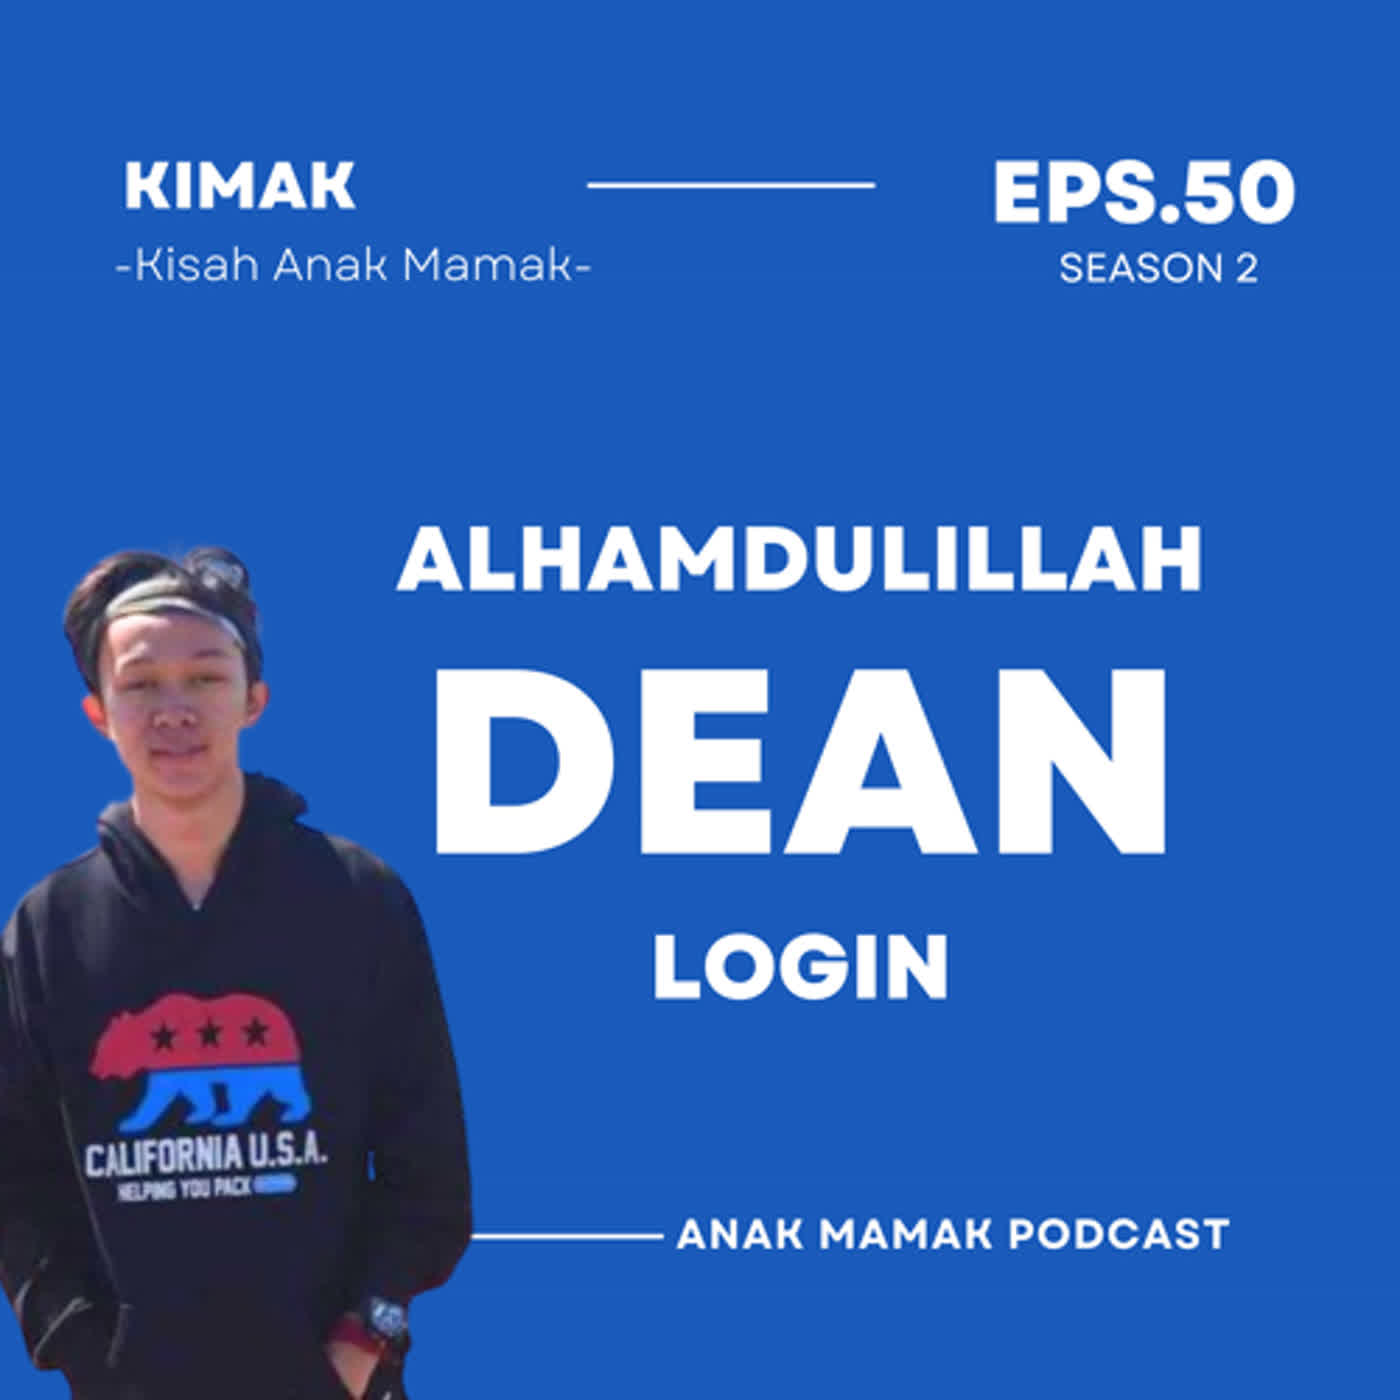 50. Alhamdulillah Dean Login #KiMak #KisahAnakMamak #PodcastAnakMamak